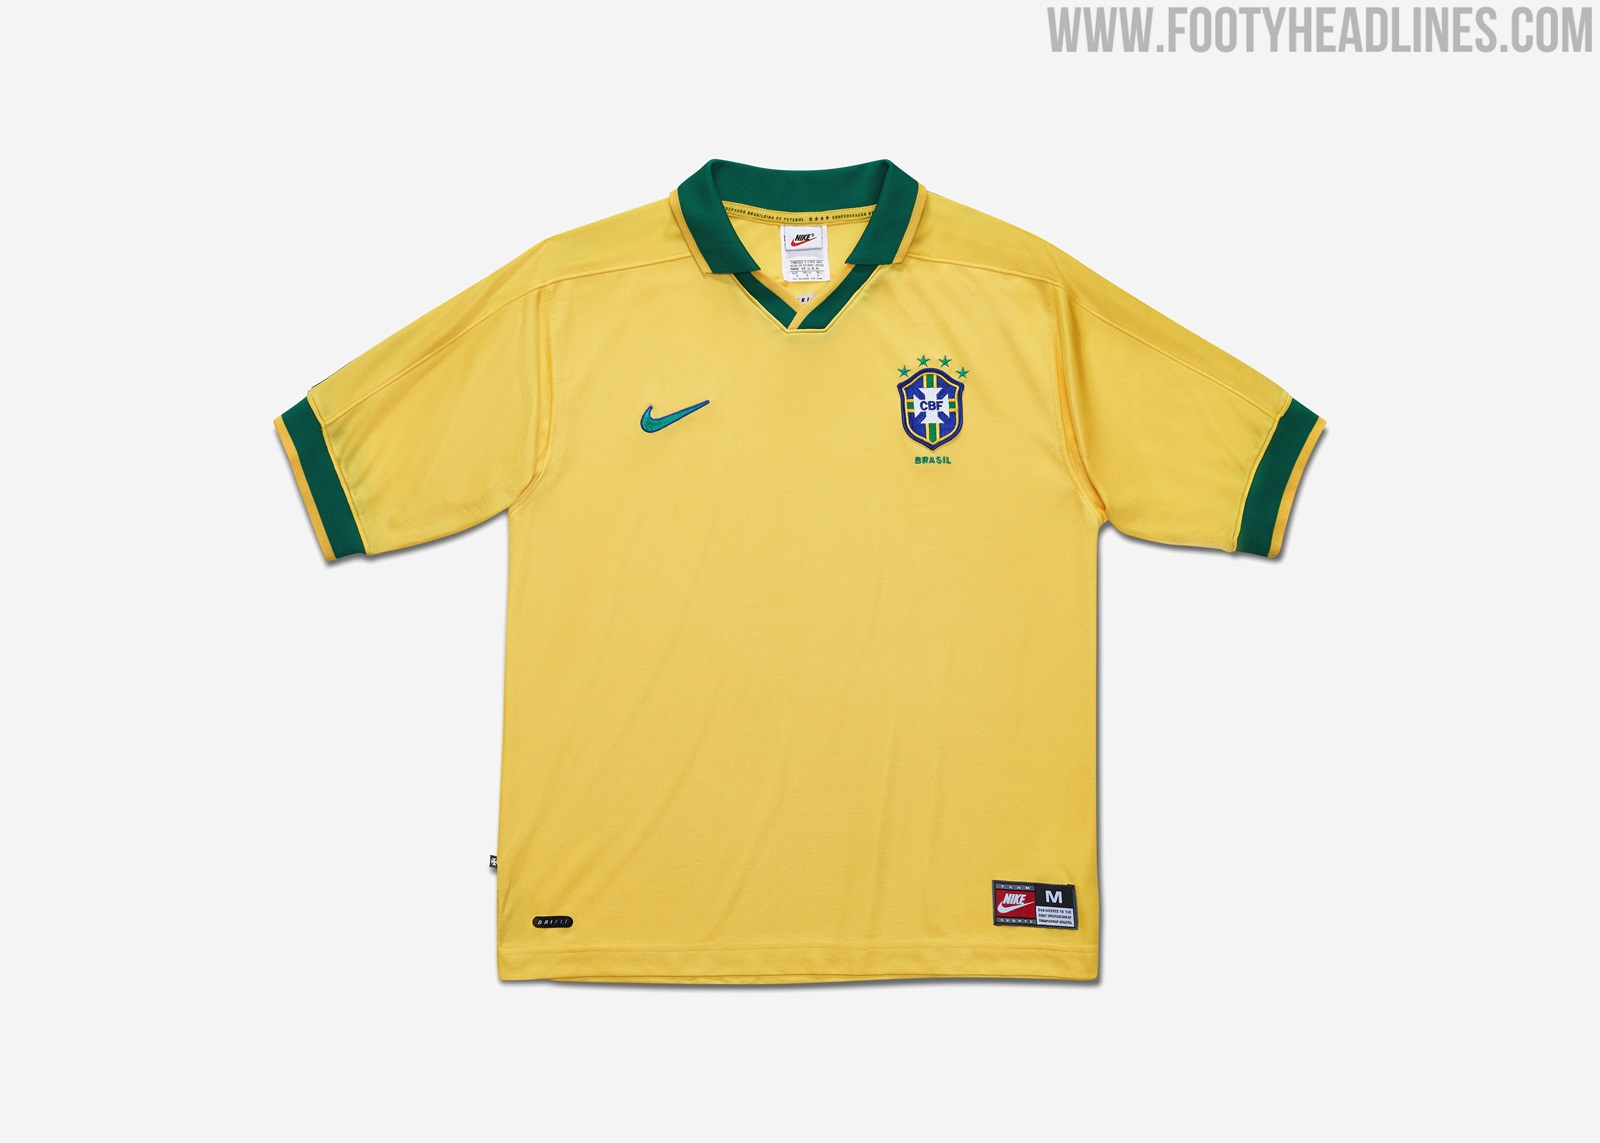 Full Nike x Brazil Home Kit Evolution - 1998-2020 - 15 Different